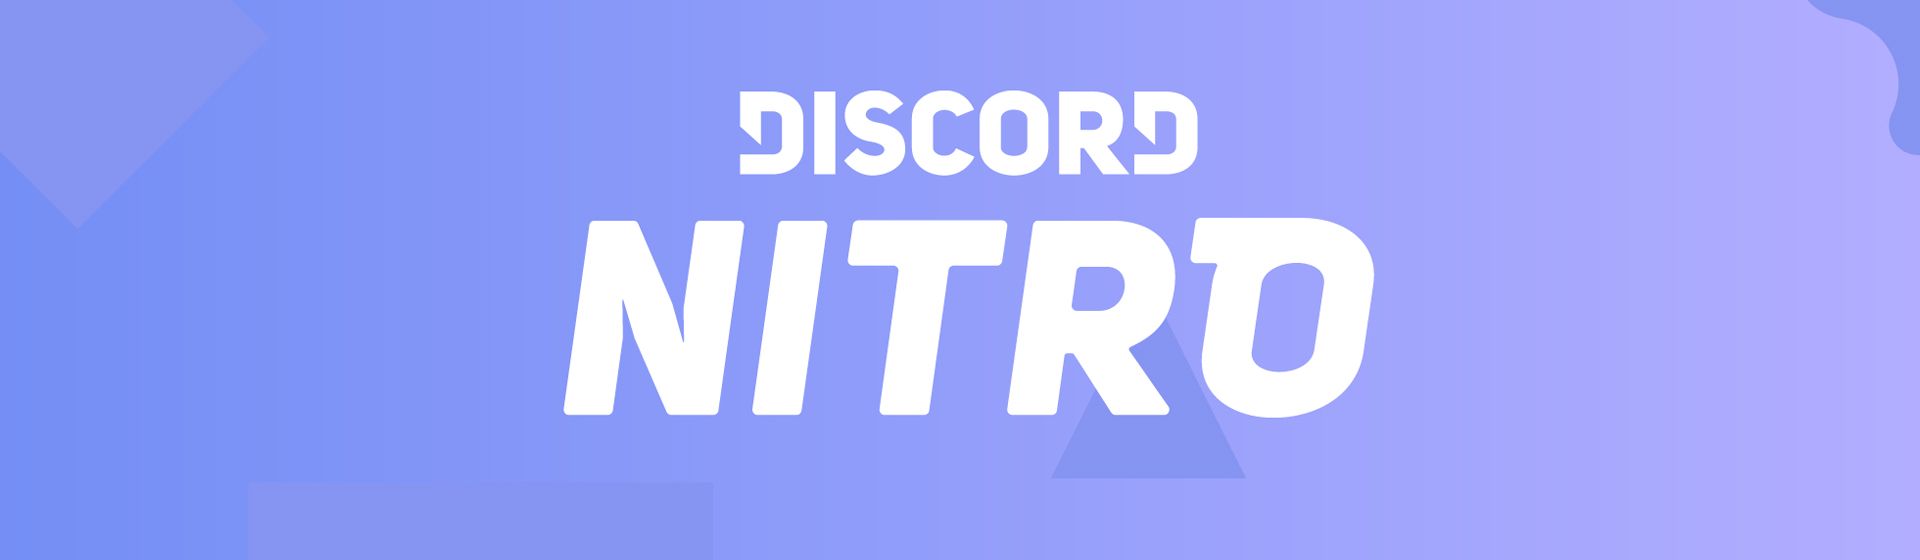 O que é Discord Nitro? Conheça o serviço e veja se vale a pena assinar